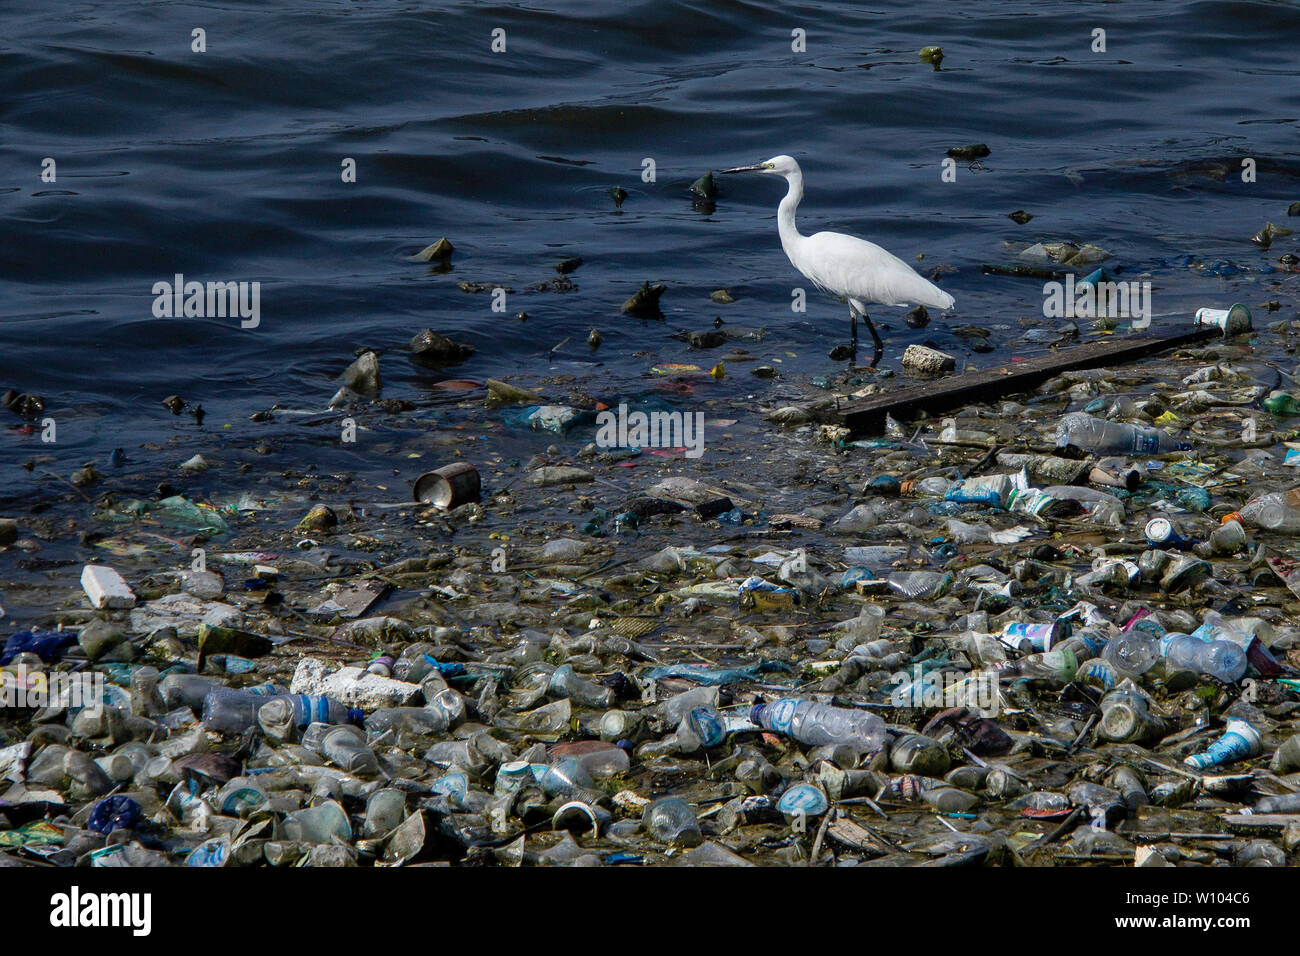 Une aigrette est vu à des appâts dans un tas de déchets plastiques contaminés à un réservoir à Lhokseumawe, Aceh.de données de Greenpeace, la production de déchets en Indonésie atteint 65 millions de tonnes par an. L'Indonésie est le deuxième pays au monde pour la production de déchets en plastique après la Chine. Banque D'Images